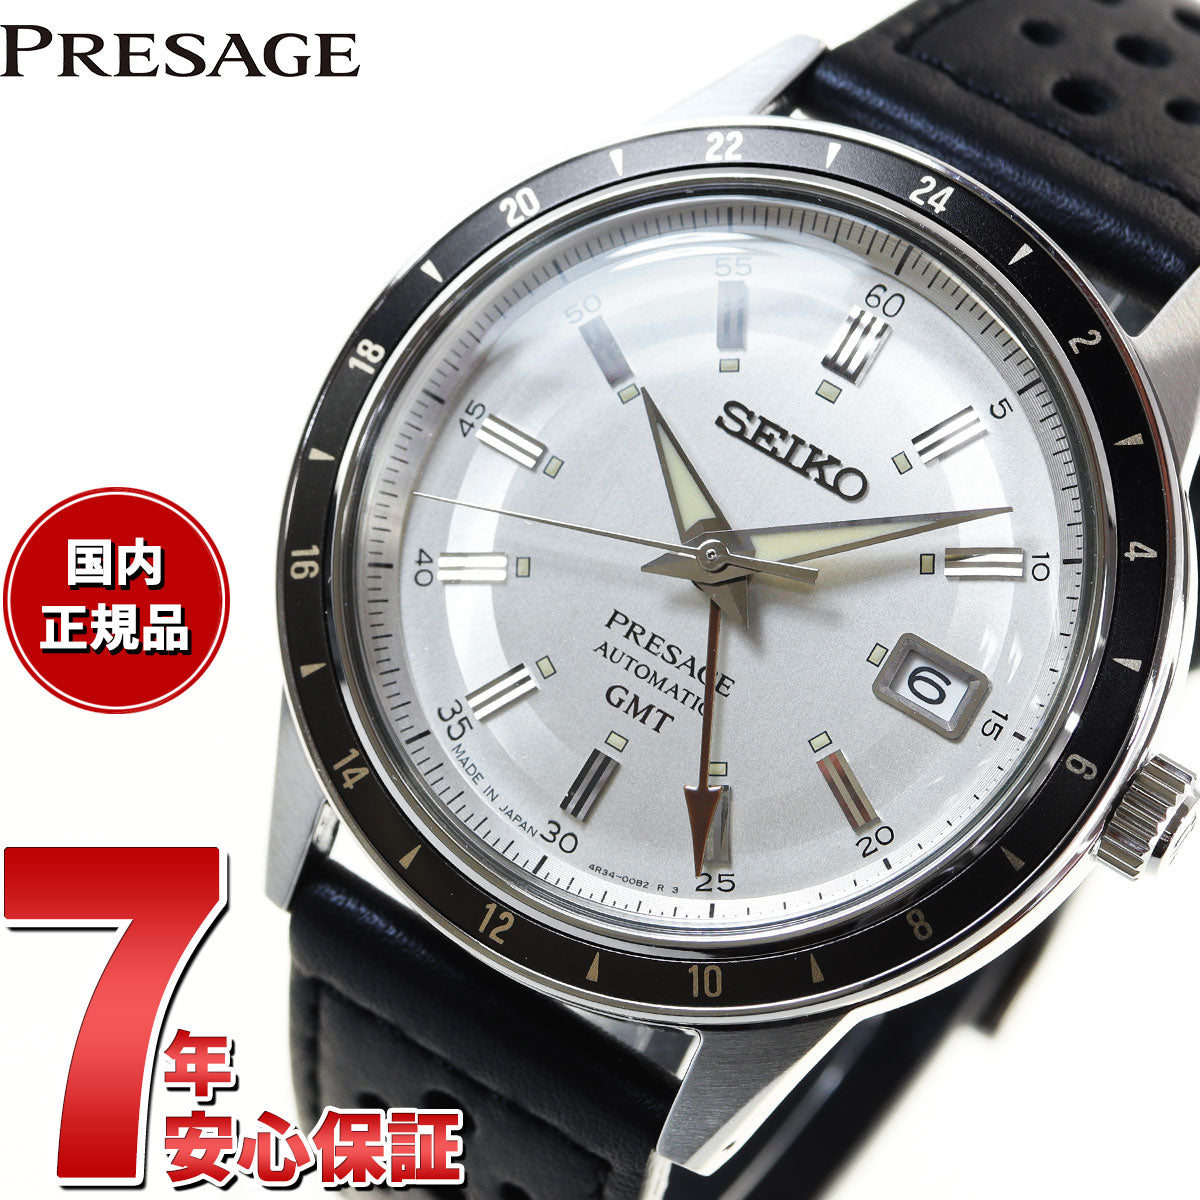 セイコー SEIKO PRESAGE 腕時計 メンズ SARY231 プレザージュ ベーシックライン 自動巻き メタリックオフホワイトxブラック アナログ表示